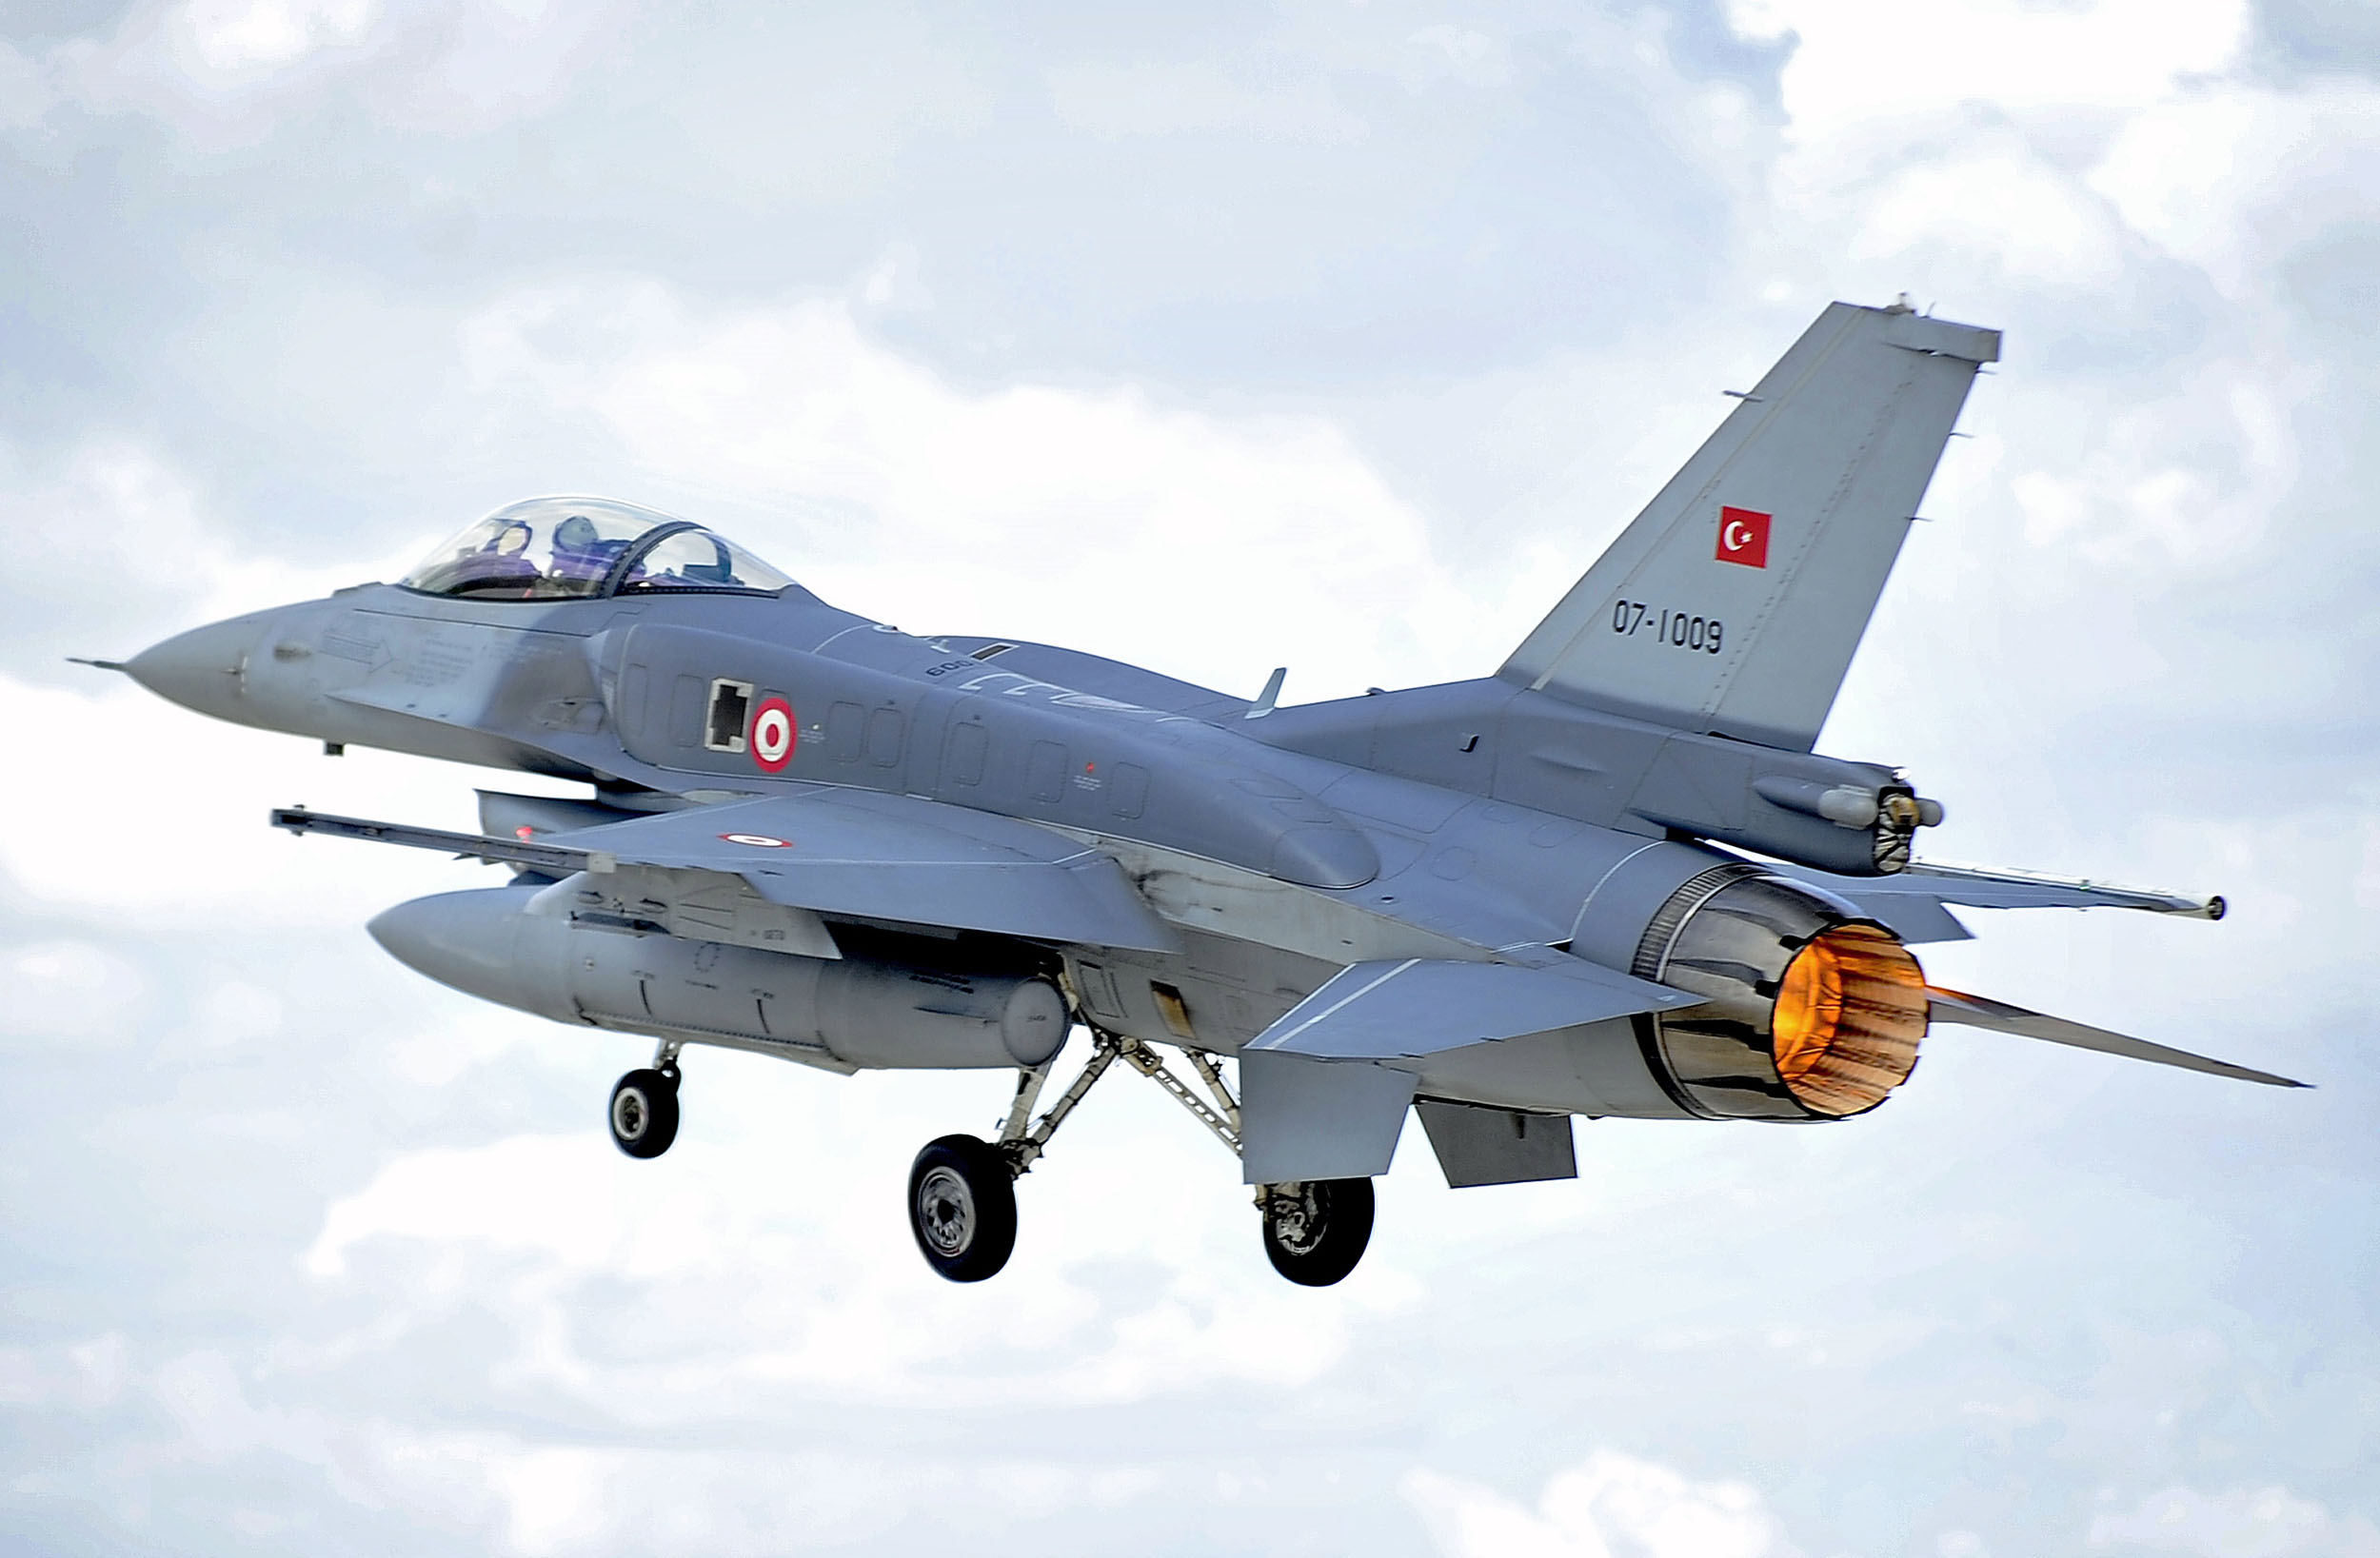 Επέκταση πτητικού ορίου ζωής για τα τουρκικά F-16